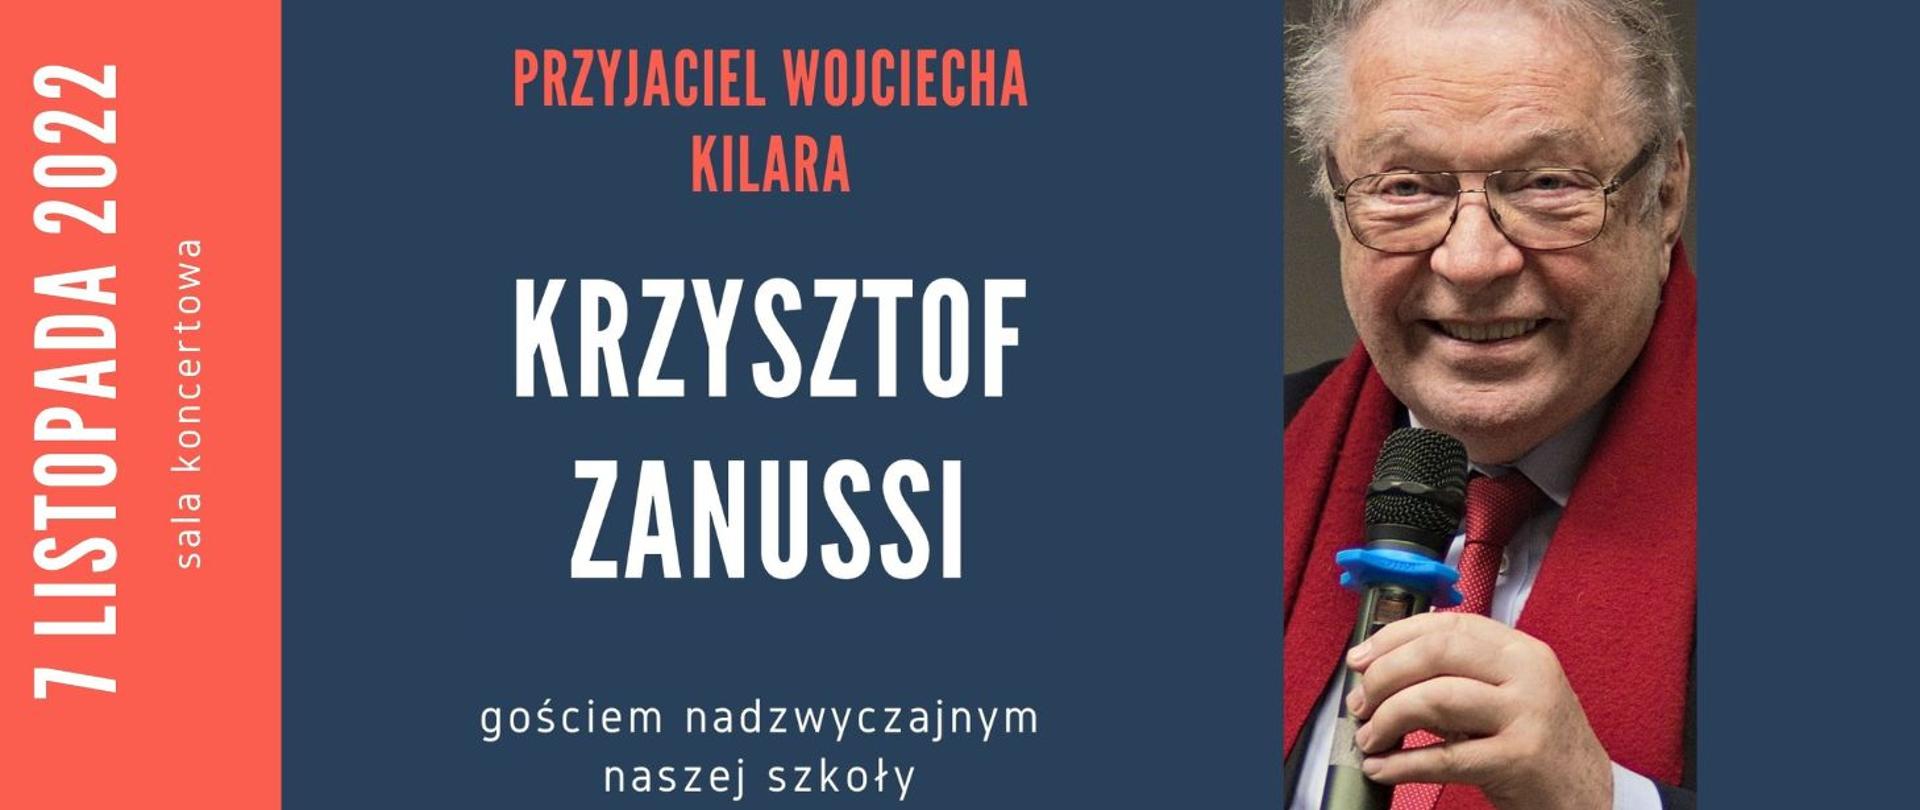 Grafika przedstawia po lewej zdjęcie Krzysztofa Zanussiego, po prawej ciemne tło z napisem "Przyjaciel Wojciecha Kilara Krzysztof Zanusssi gościem nadzwyczajnym naszej szkoły, 7 listopada 2022 sala koncertowa"